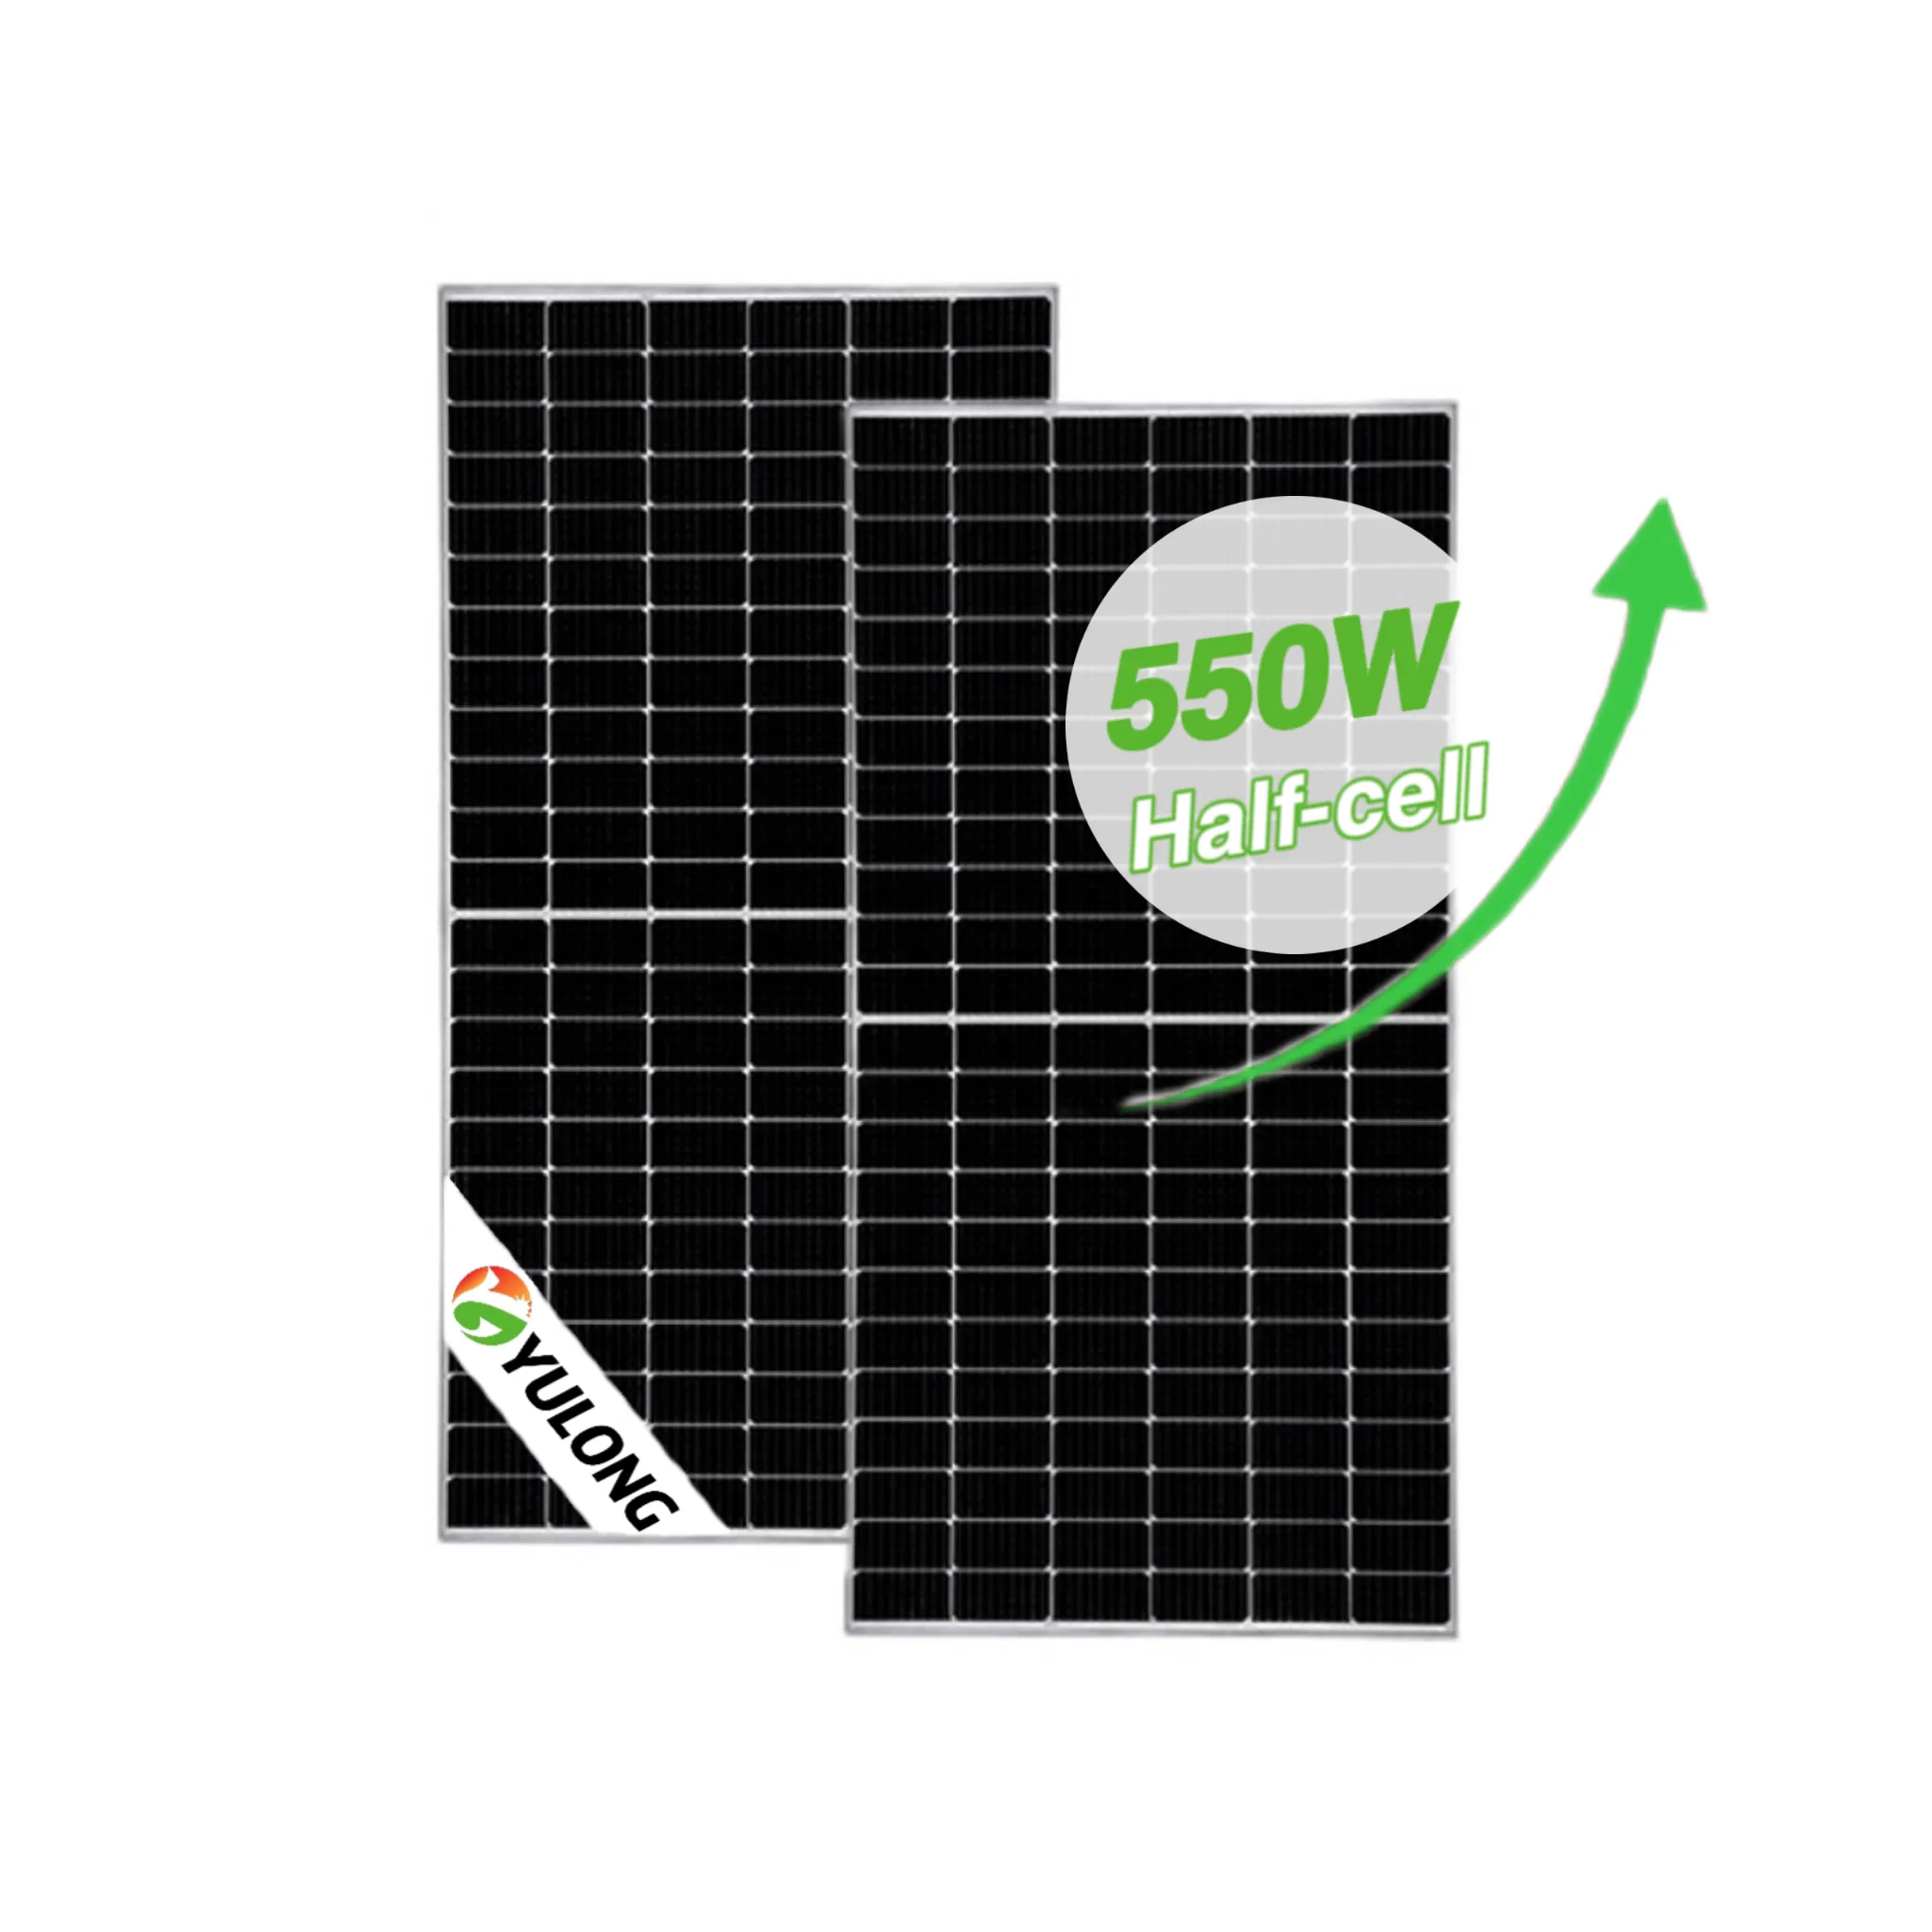 Panel solar multifuncional de suministro de fábrica de 580W con certificación Tuv/Ce para ventas al por mayor